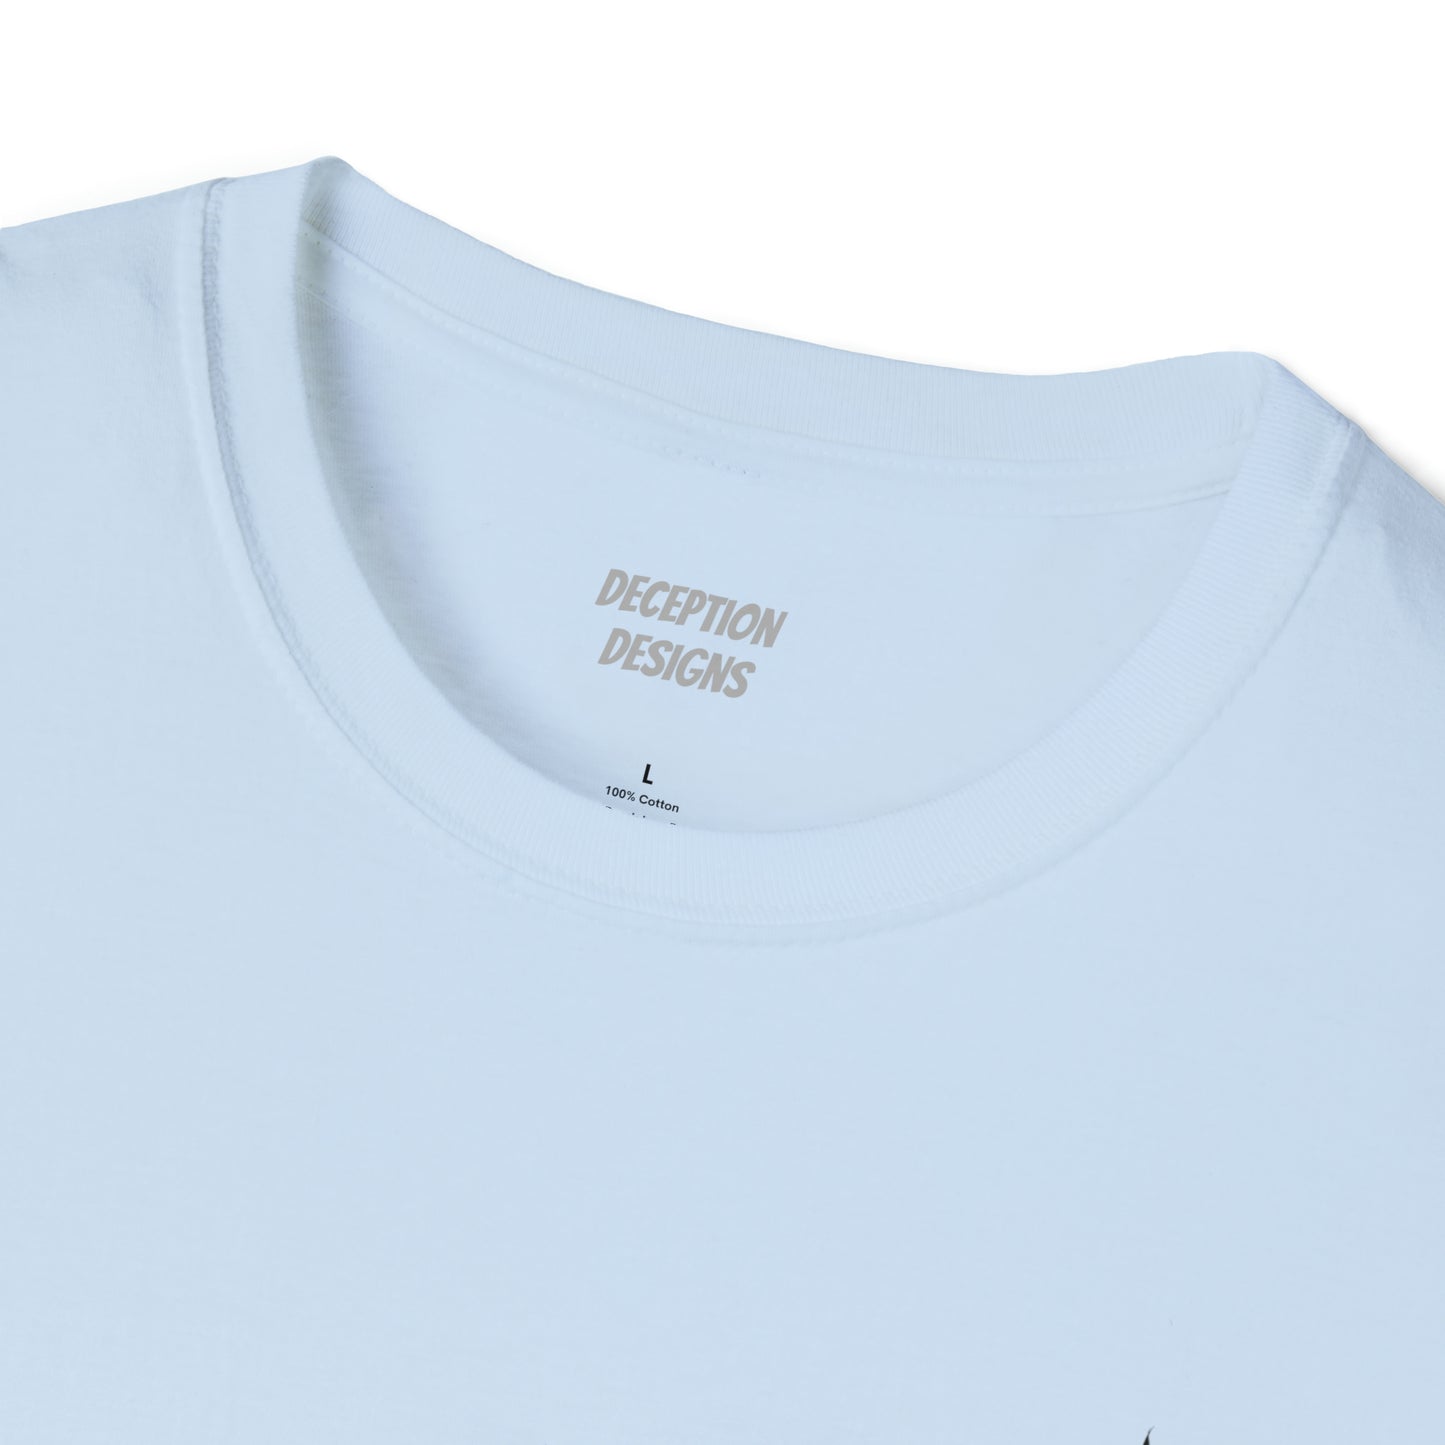 EAGLE ANACORTES Unisex Softstyle T-Shirt